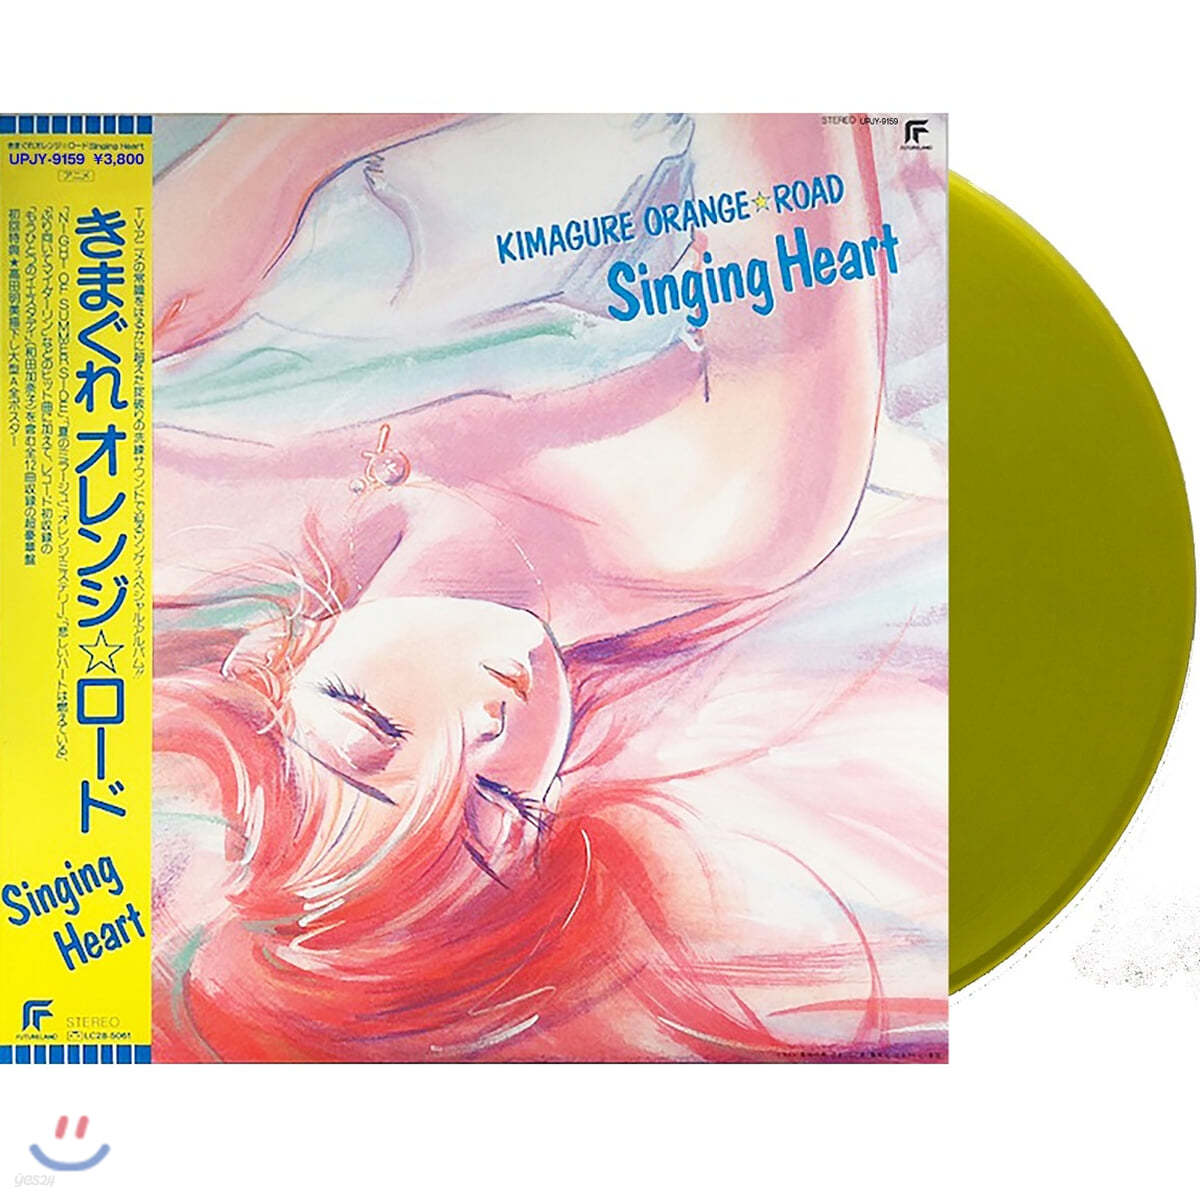 변덕쟁이 오렌지 로드 애니메이션 음악 (Kimagure Orange Road OST: Singing Heart ) [옐로우 컬러 LP] 